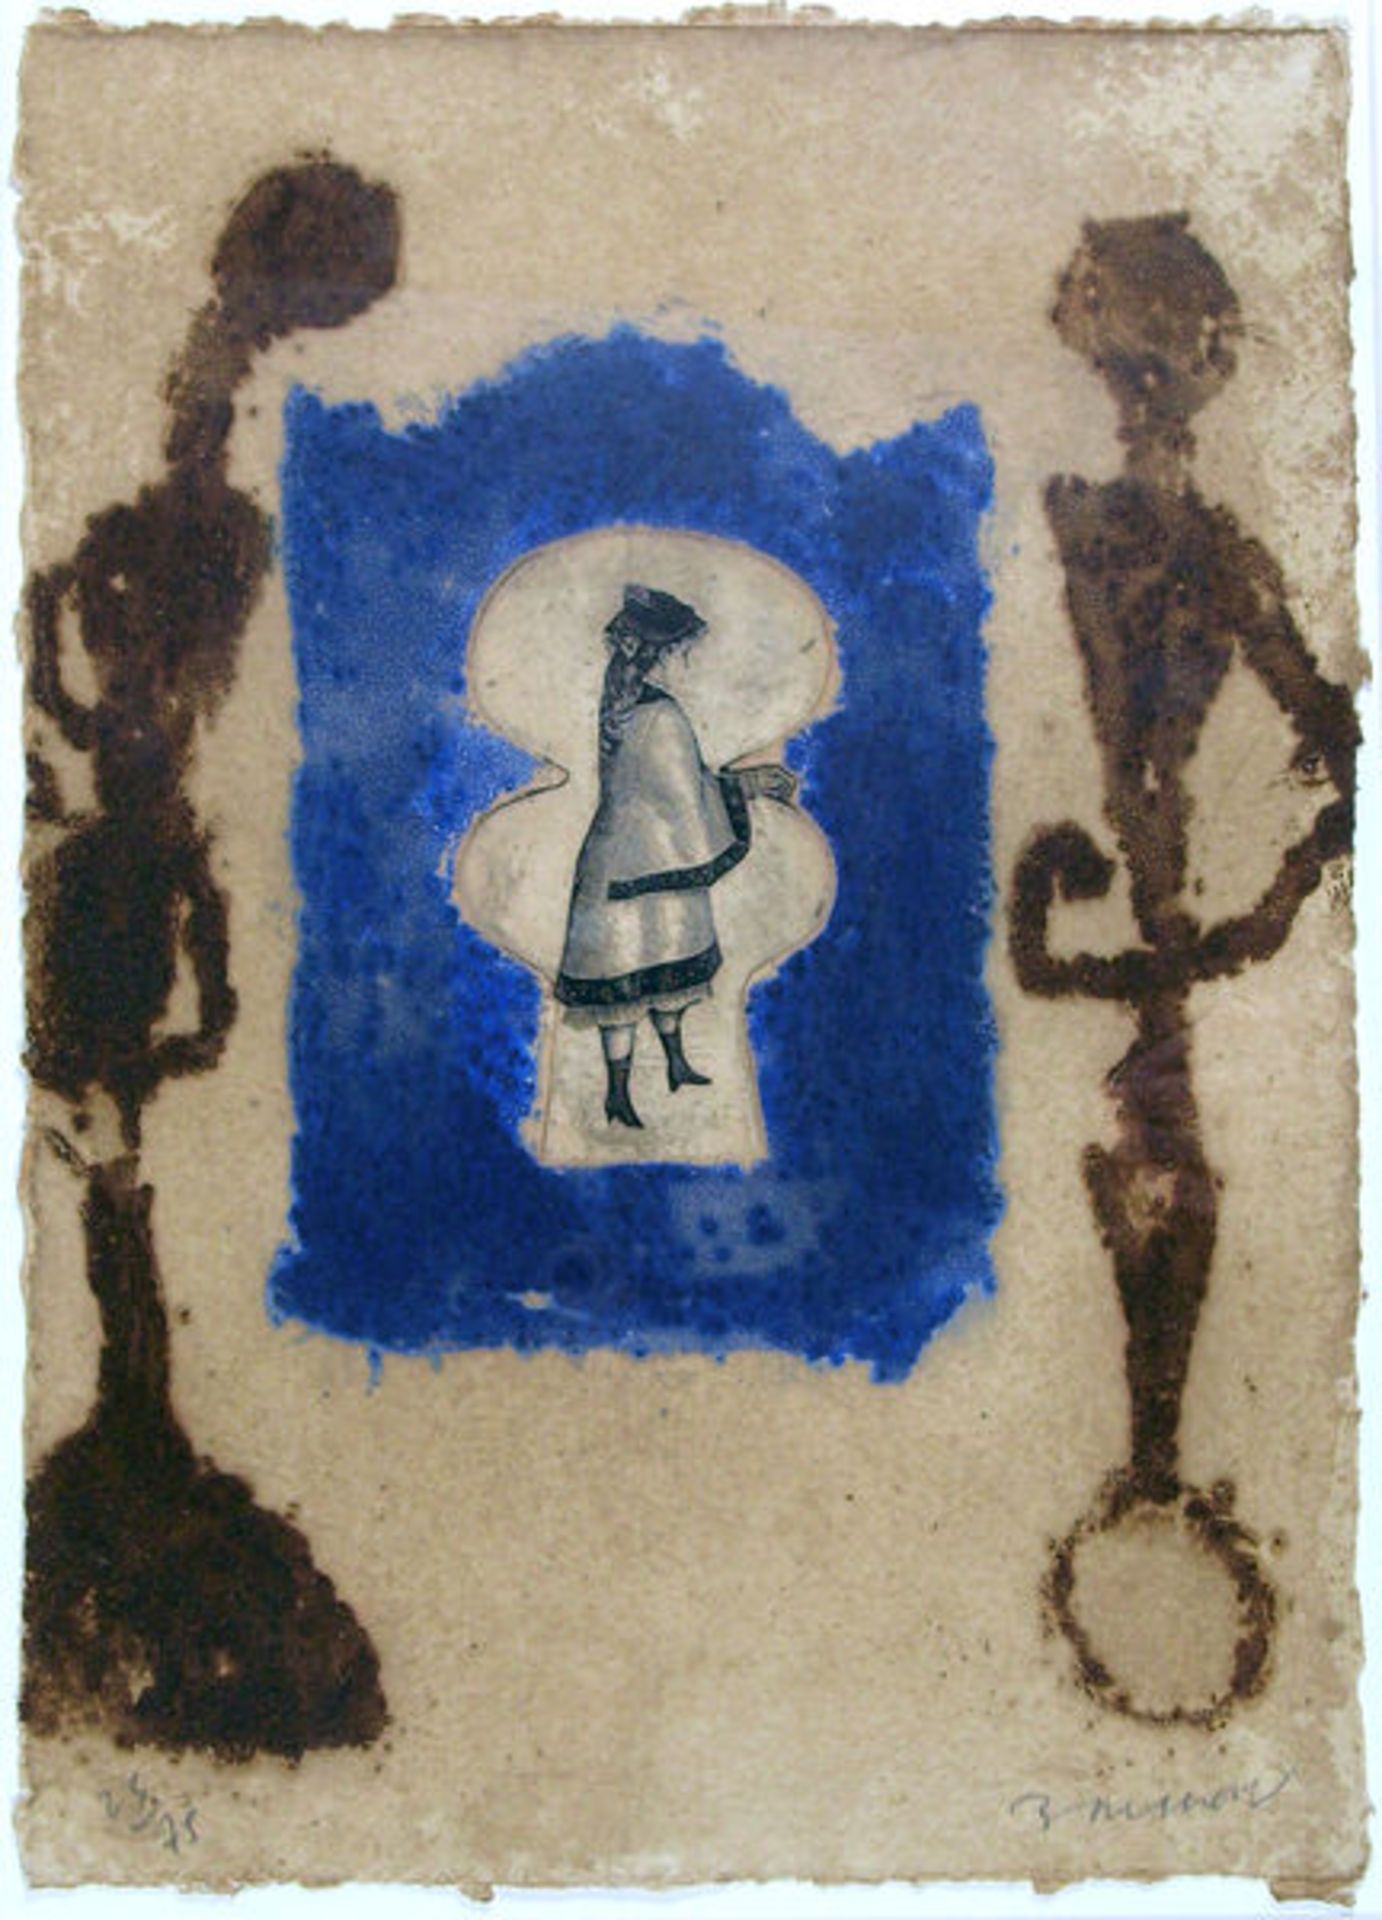 Brisson, Pierre-Marie
Farbradierung mit Carborundum und Collage auf handgeschöpftem Büttenpapier